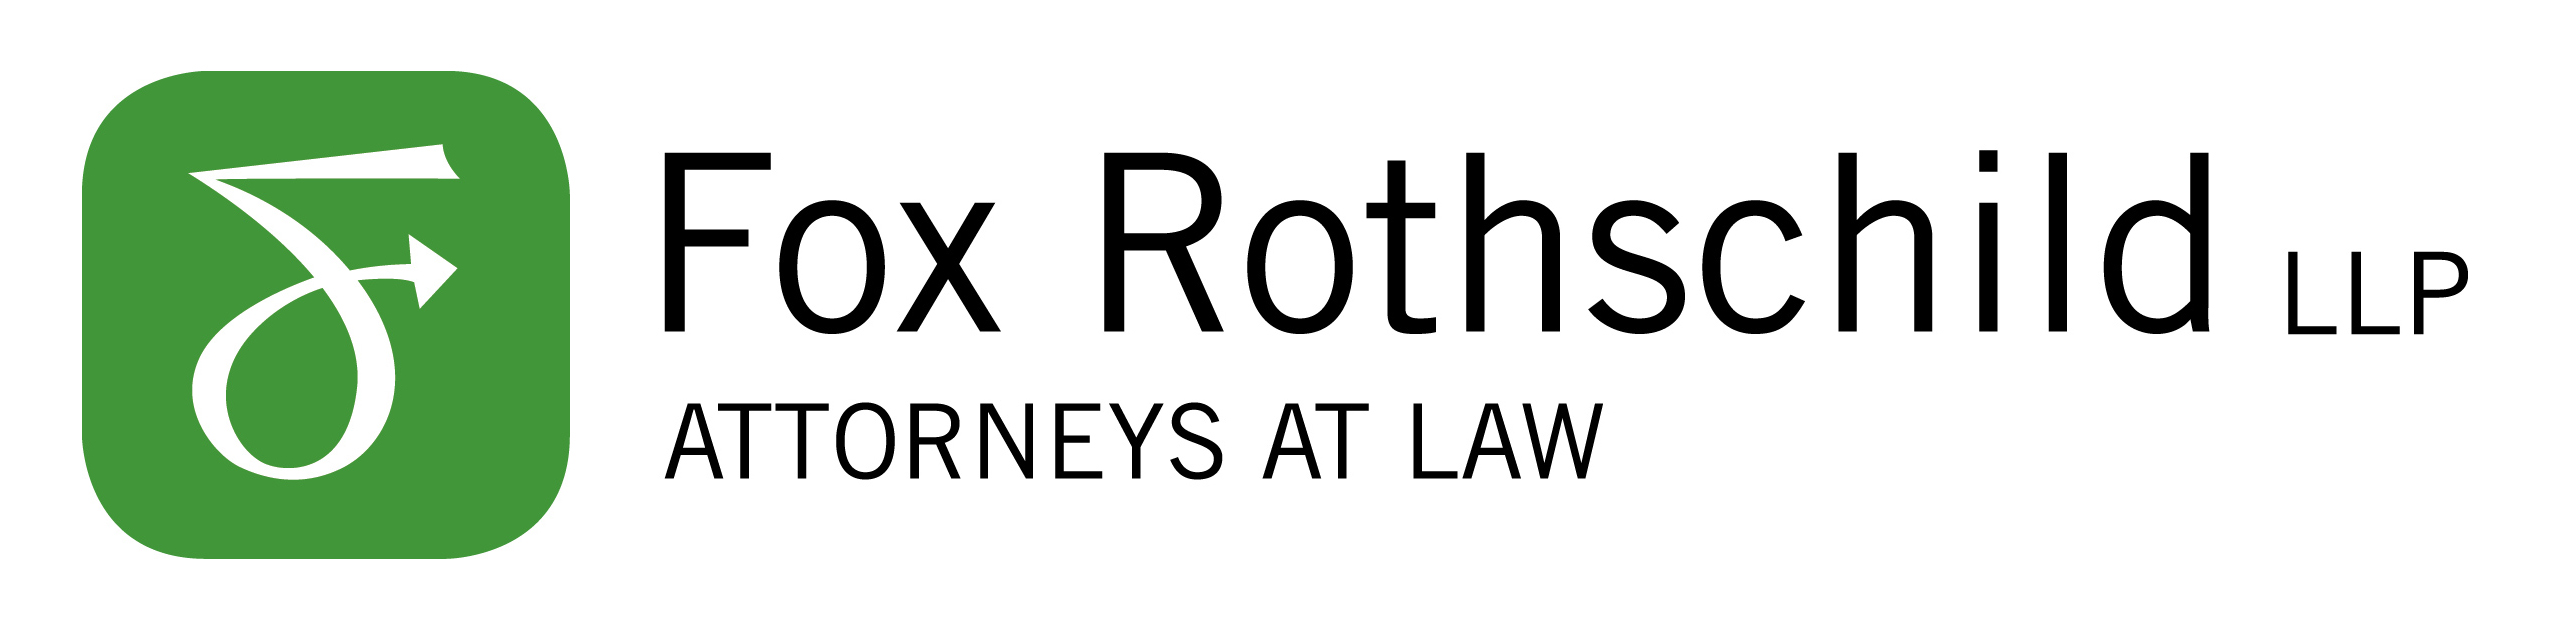 Fox Rothschild, LLP